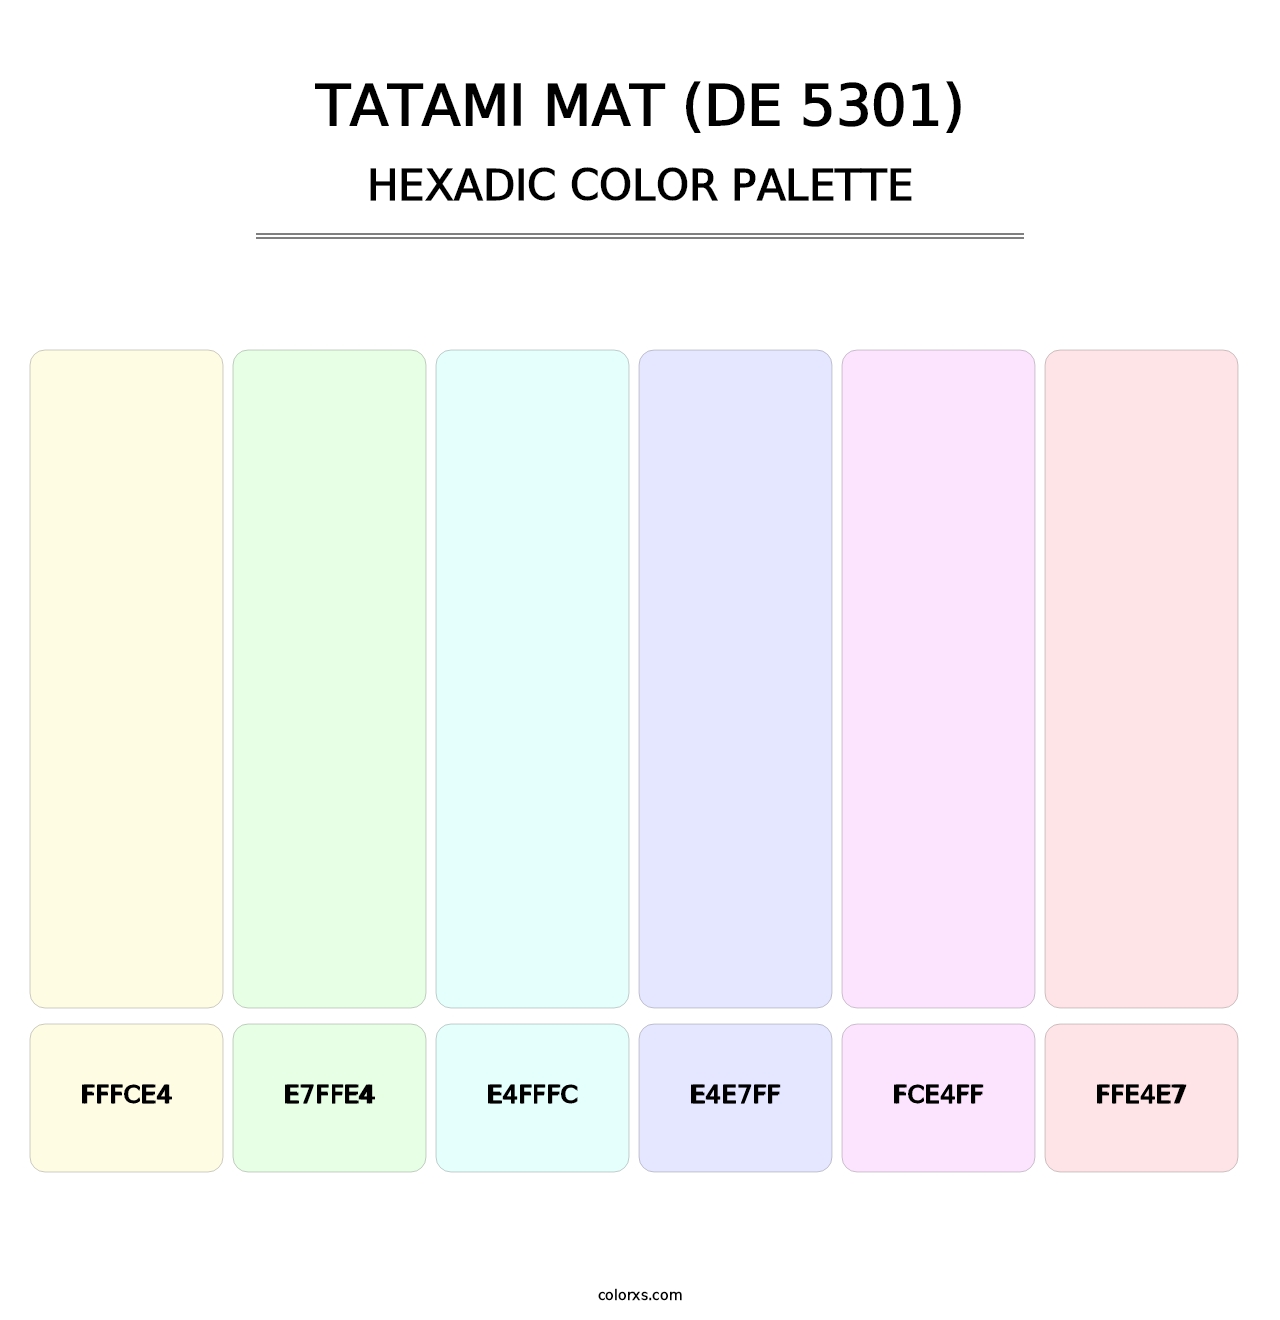 Tatami Mat (DE 5301) - Hexadic Color Palette